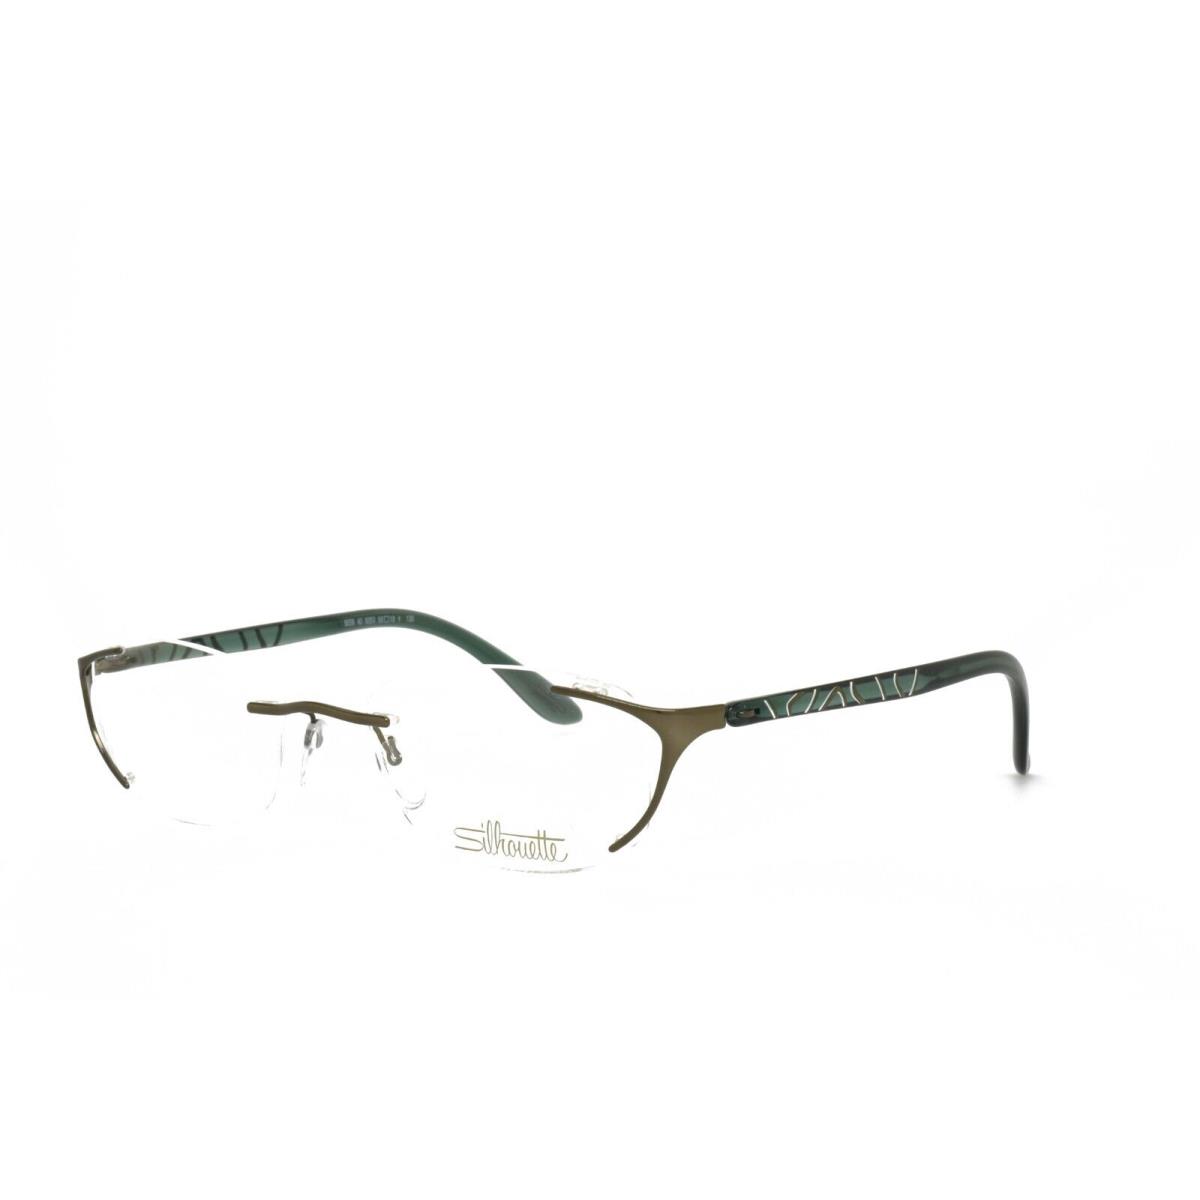 Silhouette 6658 40 6053 50-18-130 Brown Eyeglasses